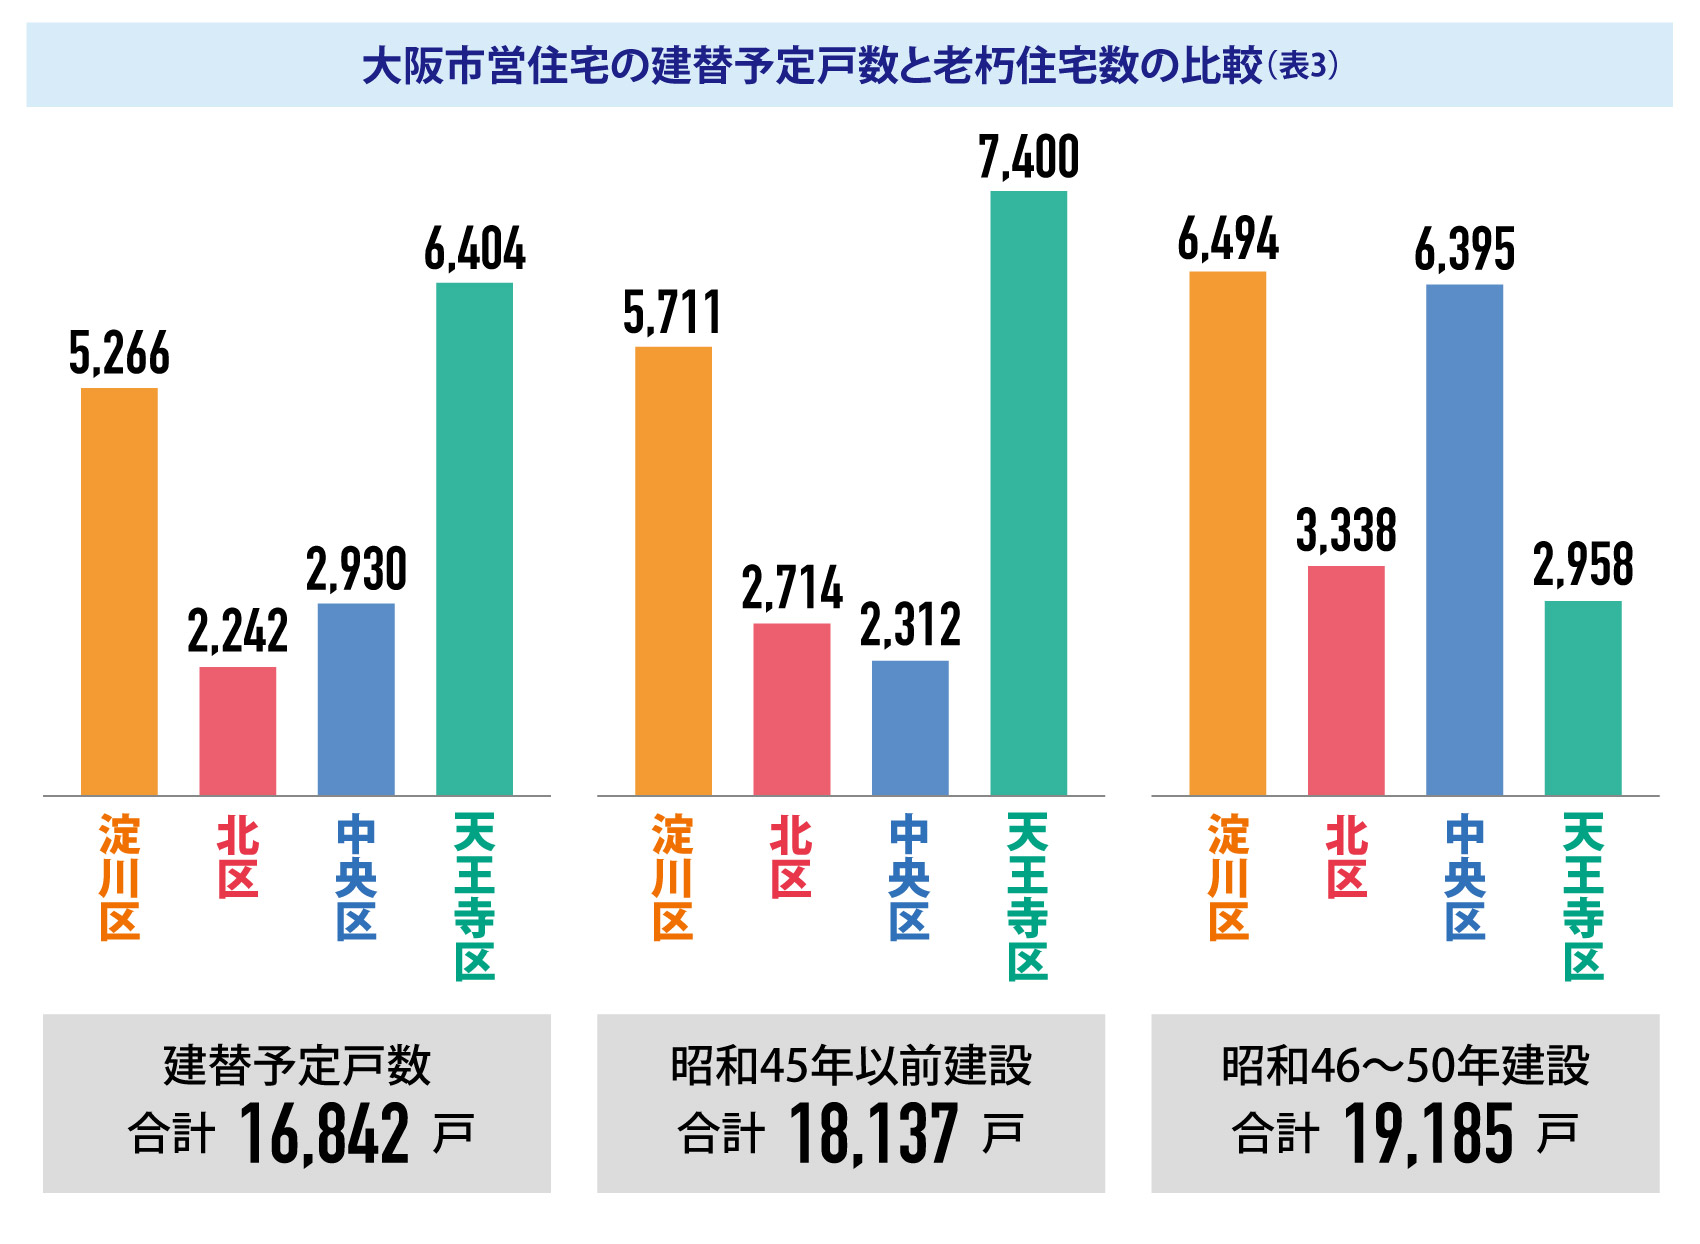 大阪市営住宅の建替予定戸数と老朽住宅数の比較（表3）